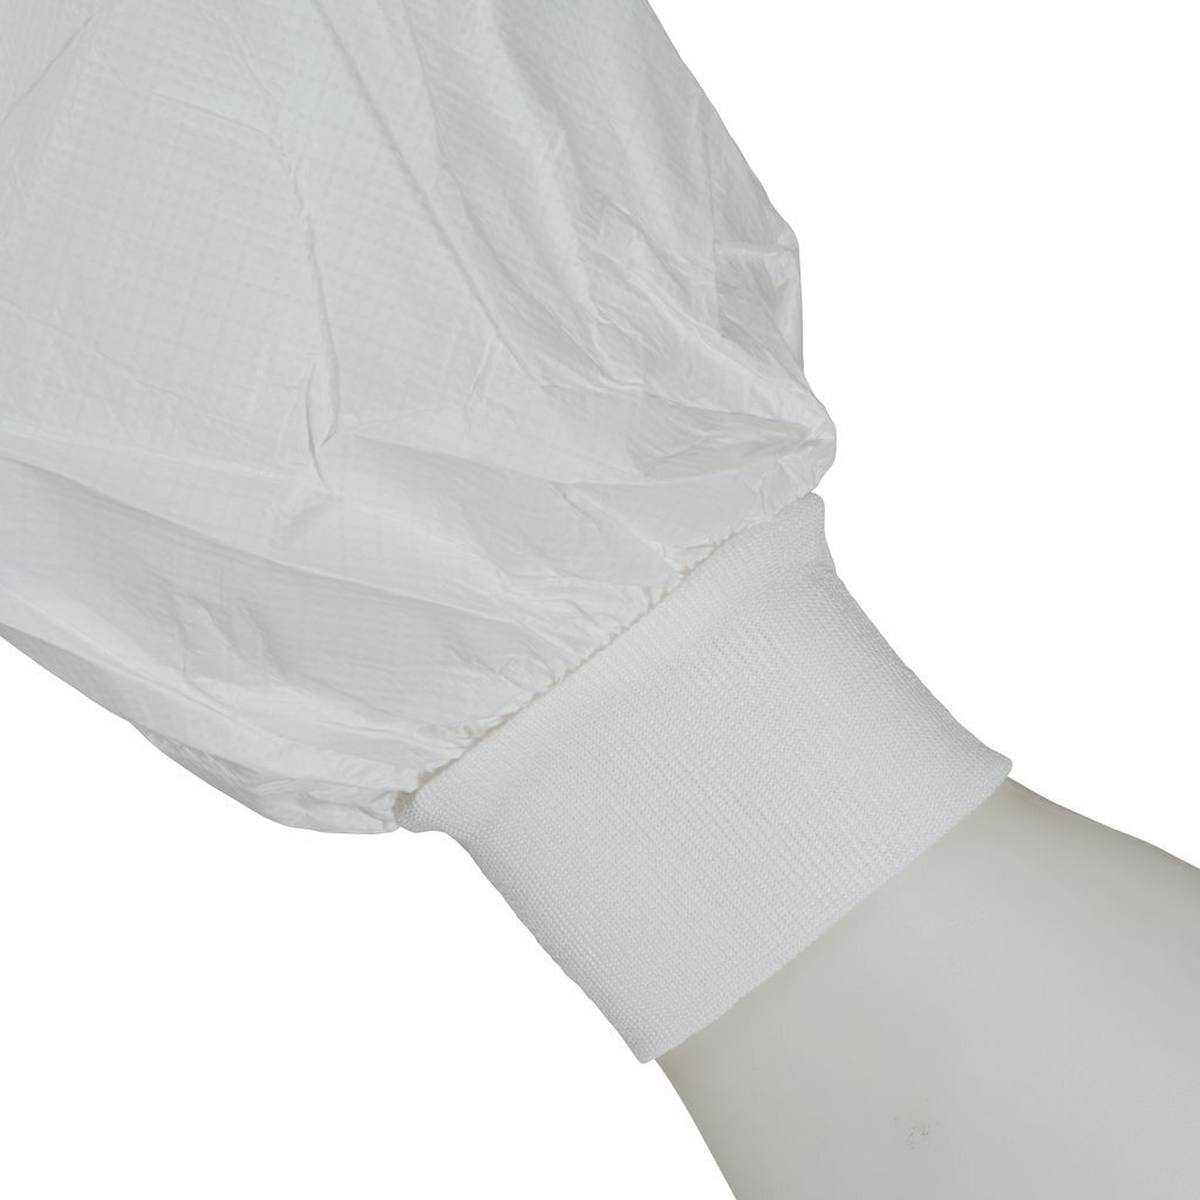 3M 4440 Manteau, blanc, taille 4XL, particulièrement respirant, très léger, avec fermeture éclair, poignets tricotés